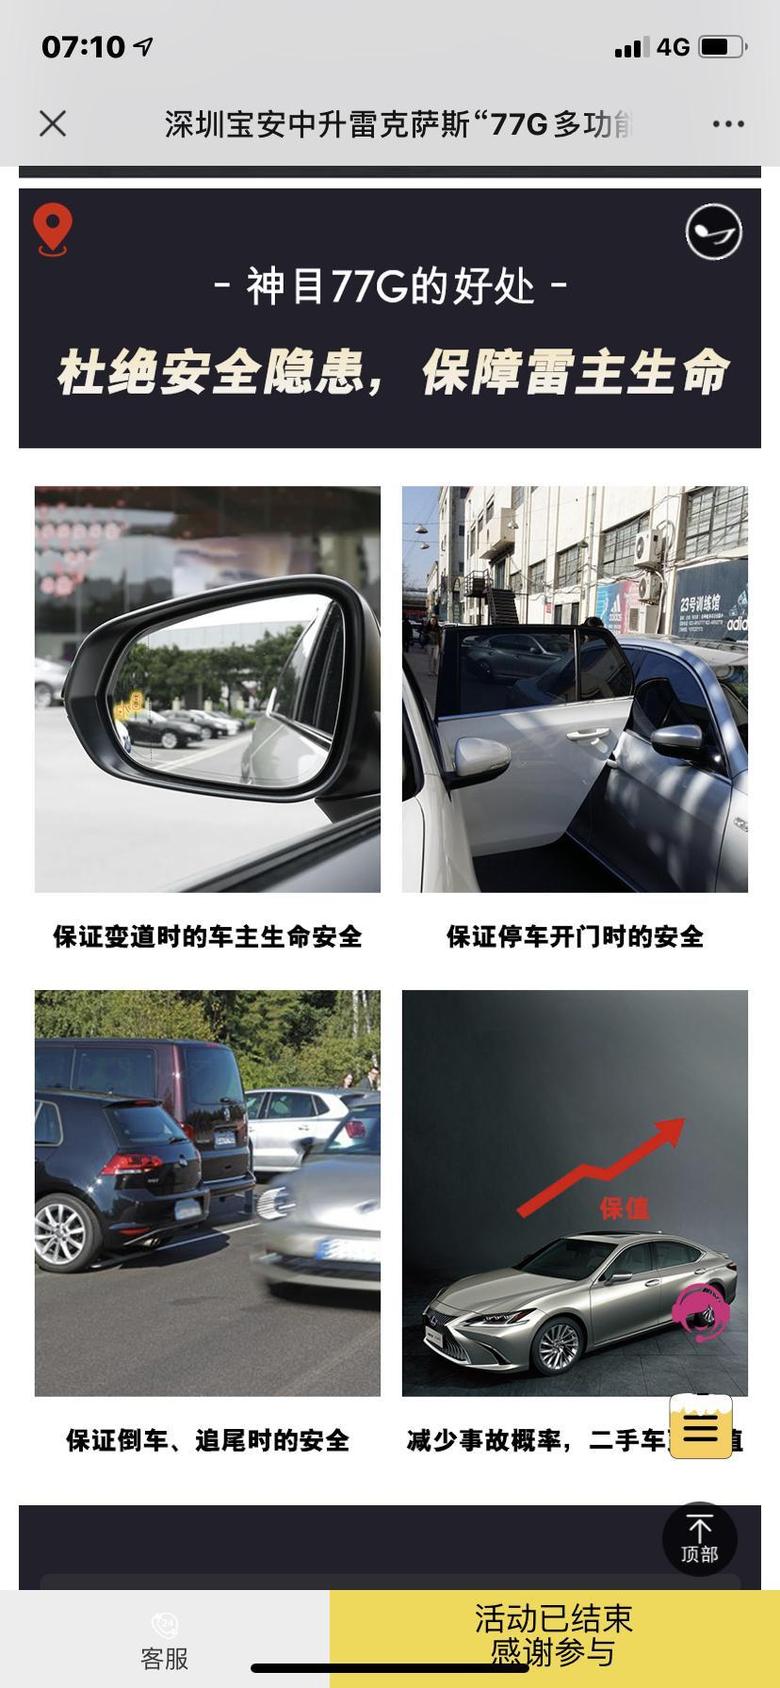 雷克萨斯es 上礼拜深圳中升4s店刚装的，因为一些事情可能明年初要卖车所低价出，懂的人来。深圳地区可面交。